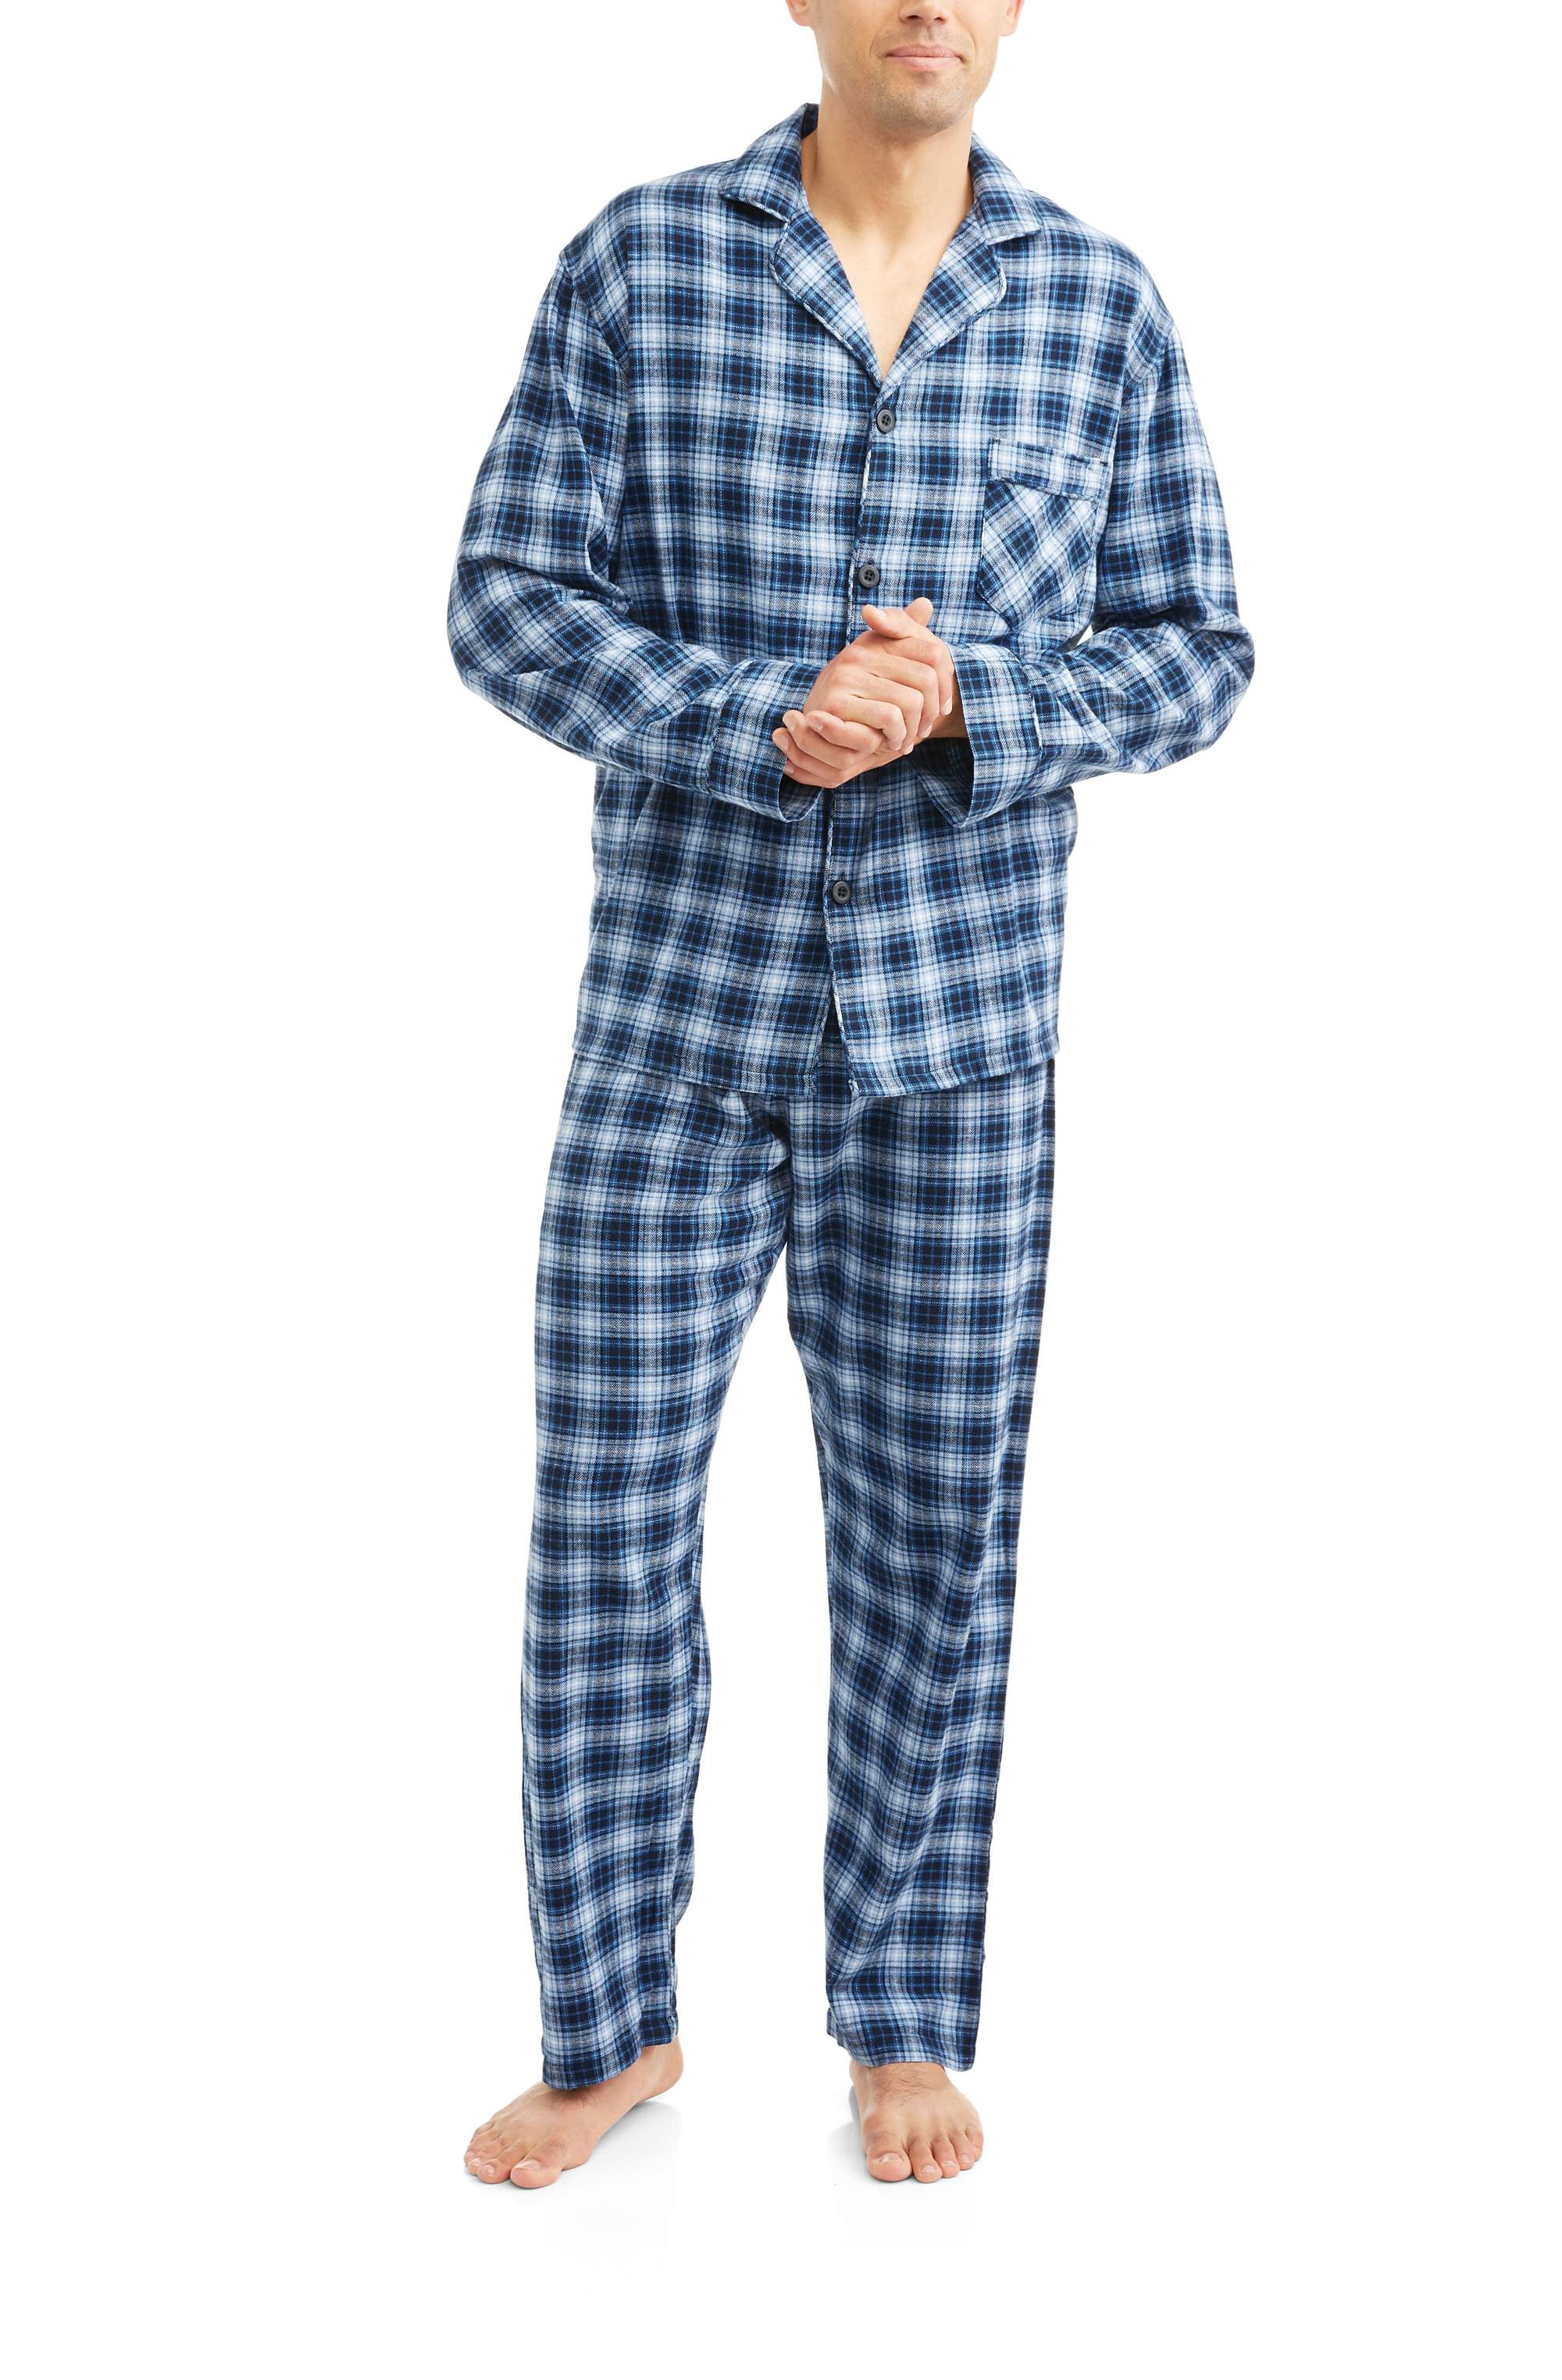 Hanes Men's 100% Cotton Flannel Plaid Pajama Top and Pant Set 